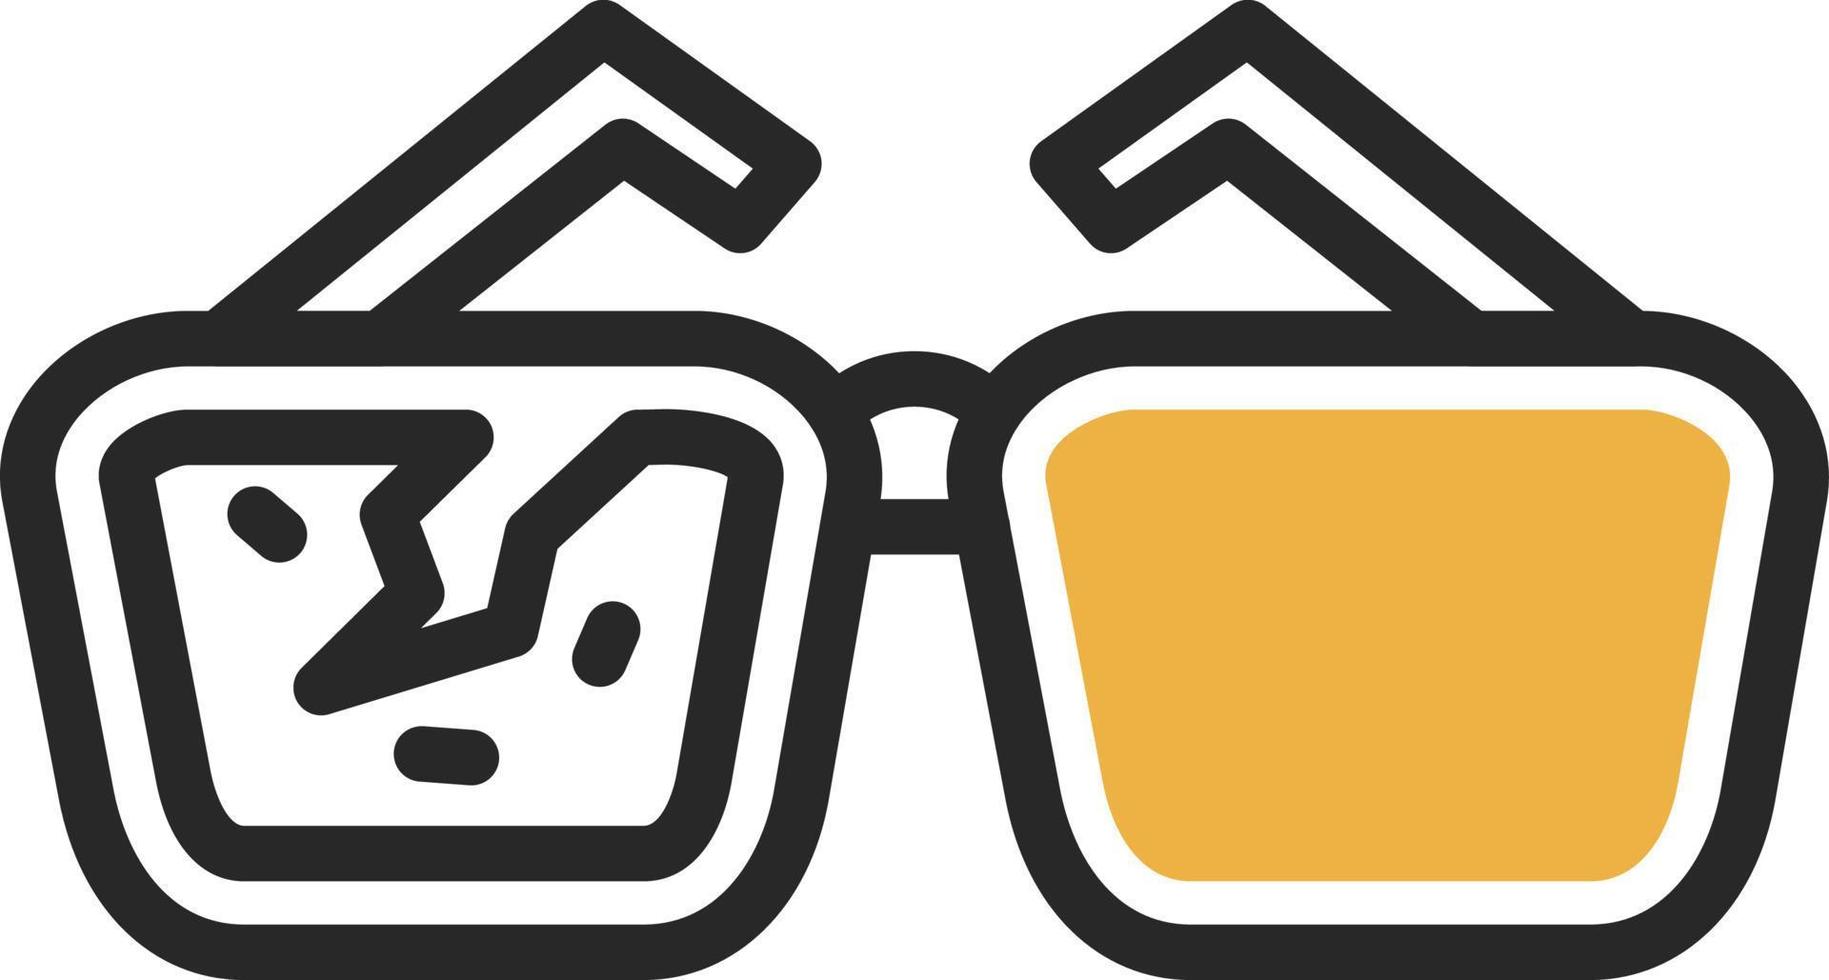 design de ícone de vetor de óculos de leitura